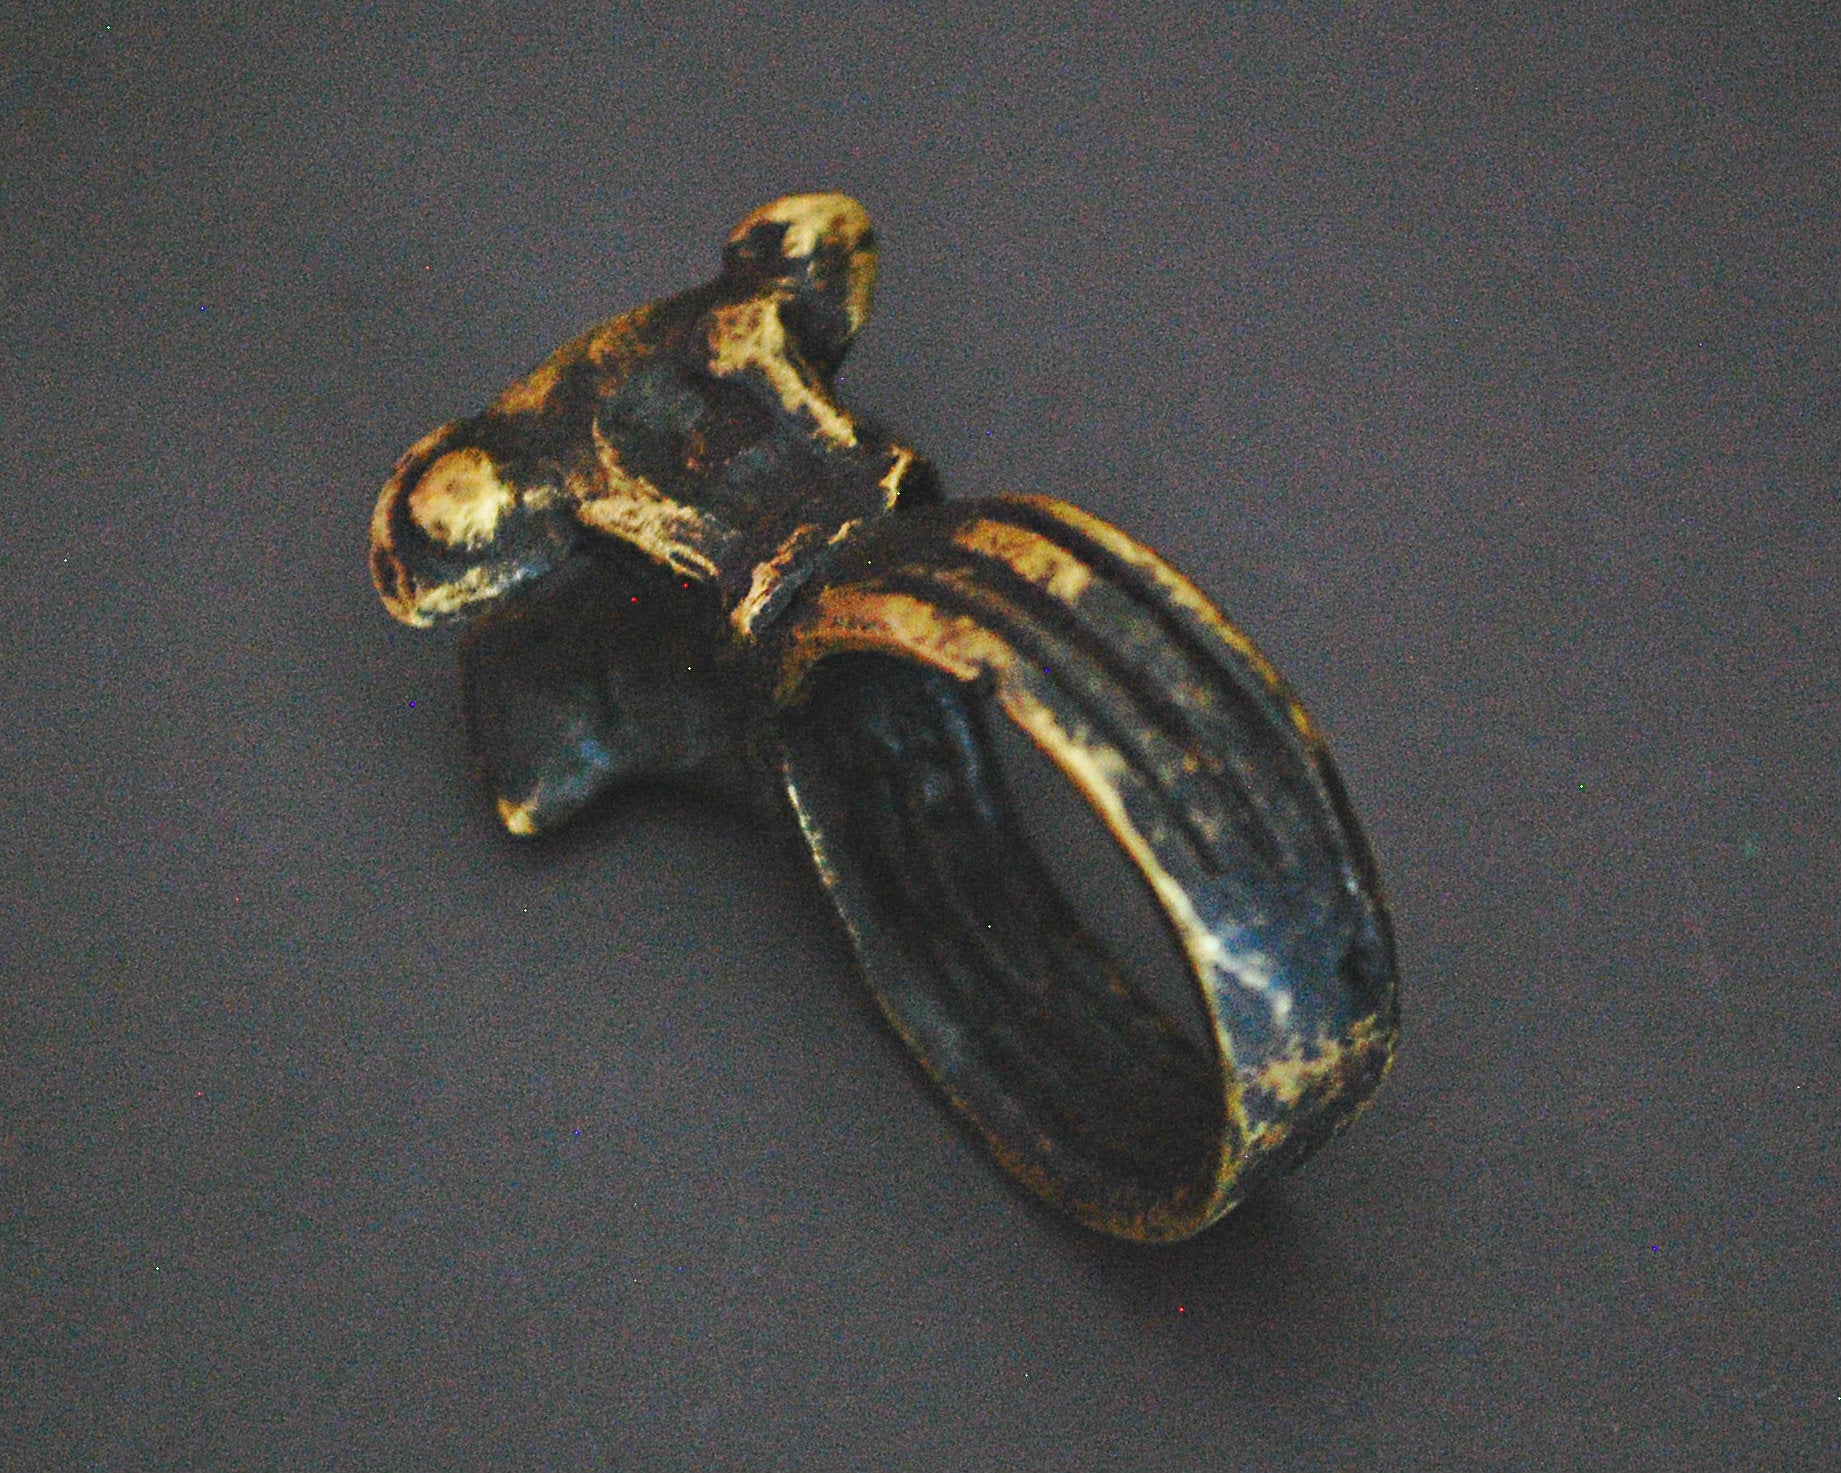 Old Lobi Chameleon Brass Ring - Size 7.75 /8